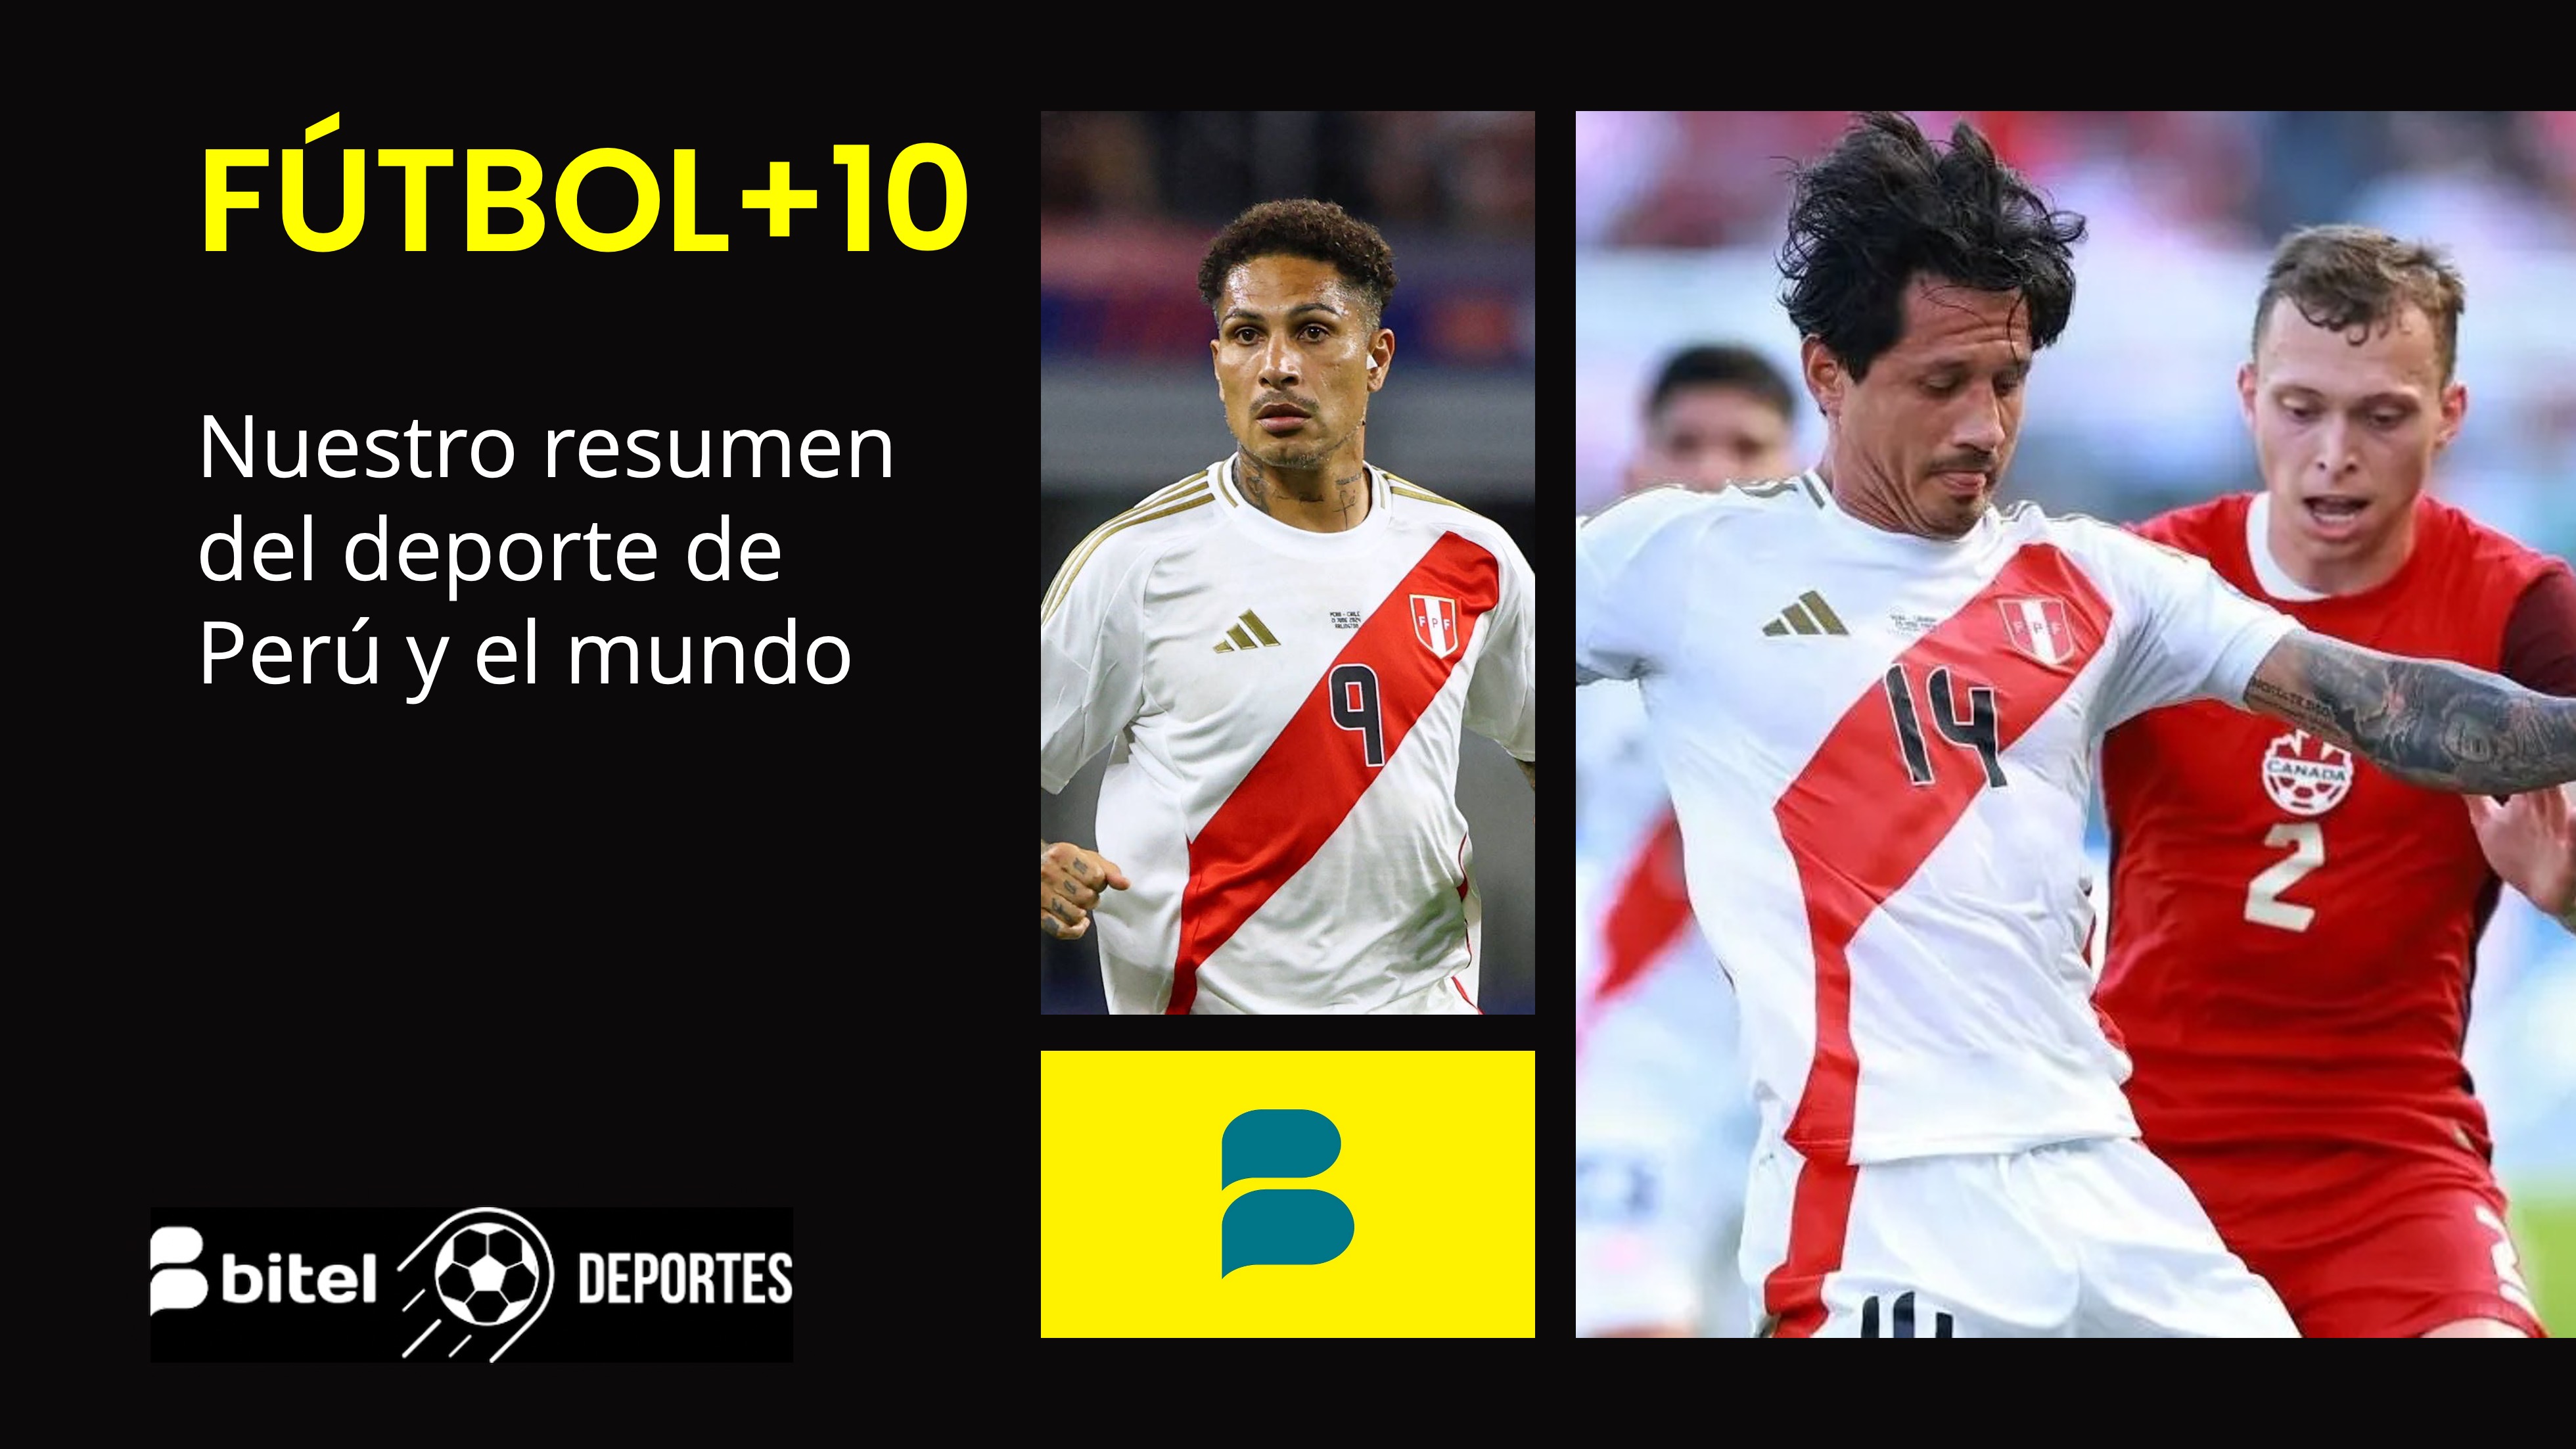 La situación de Perú en la Copa América